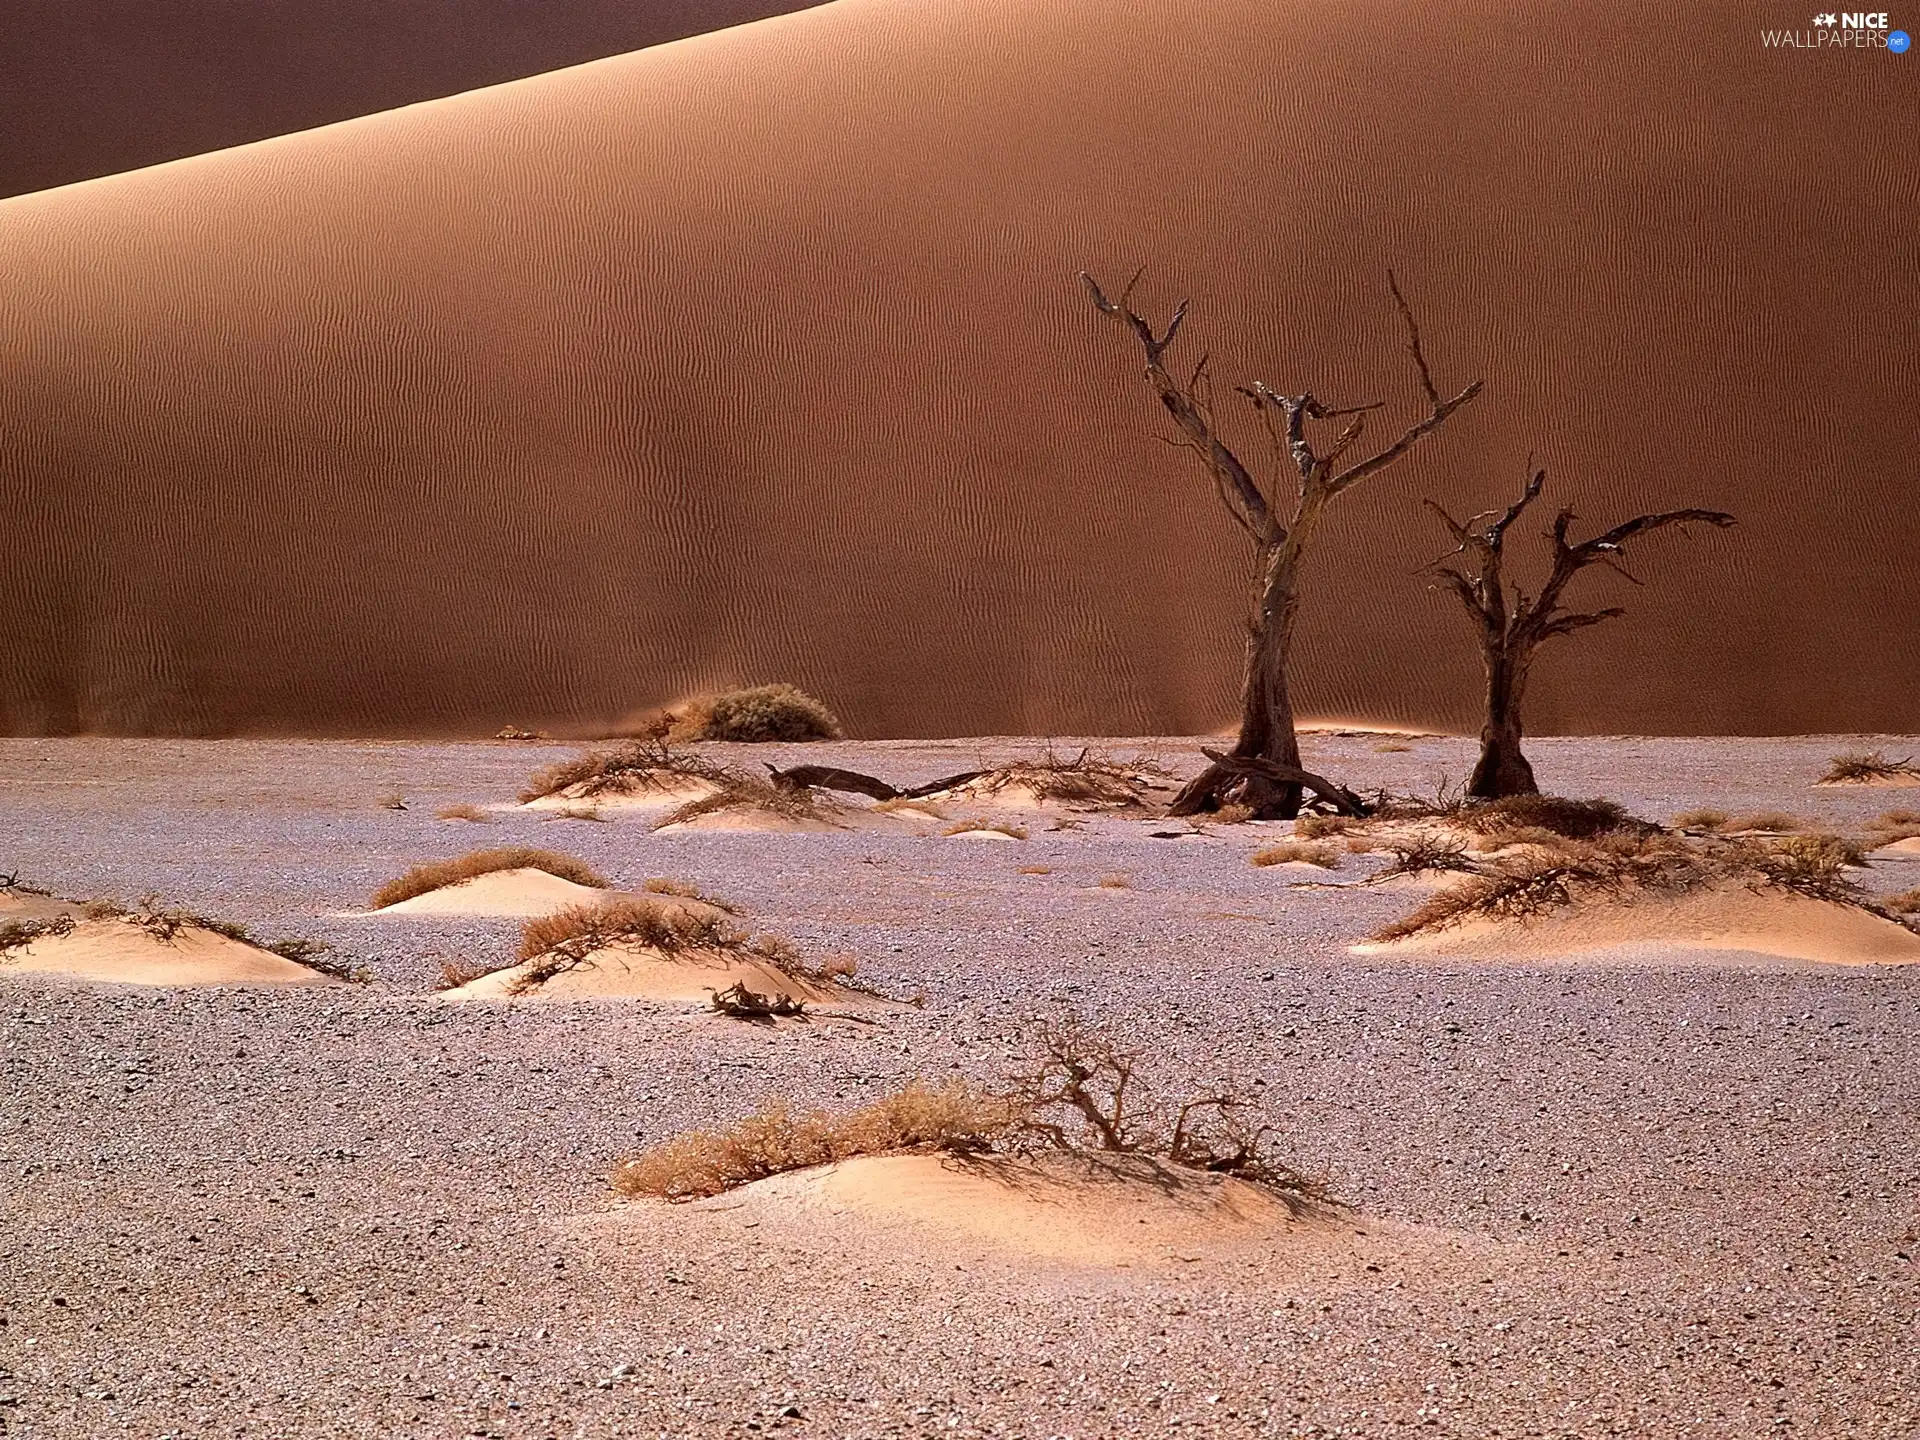 Namib, Africa